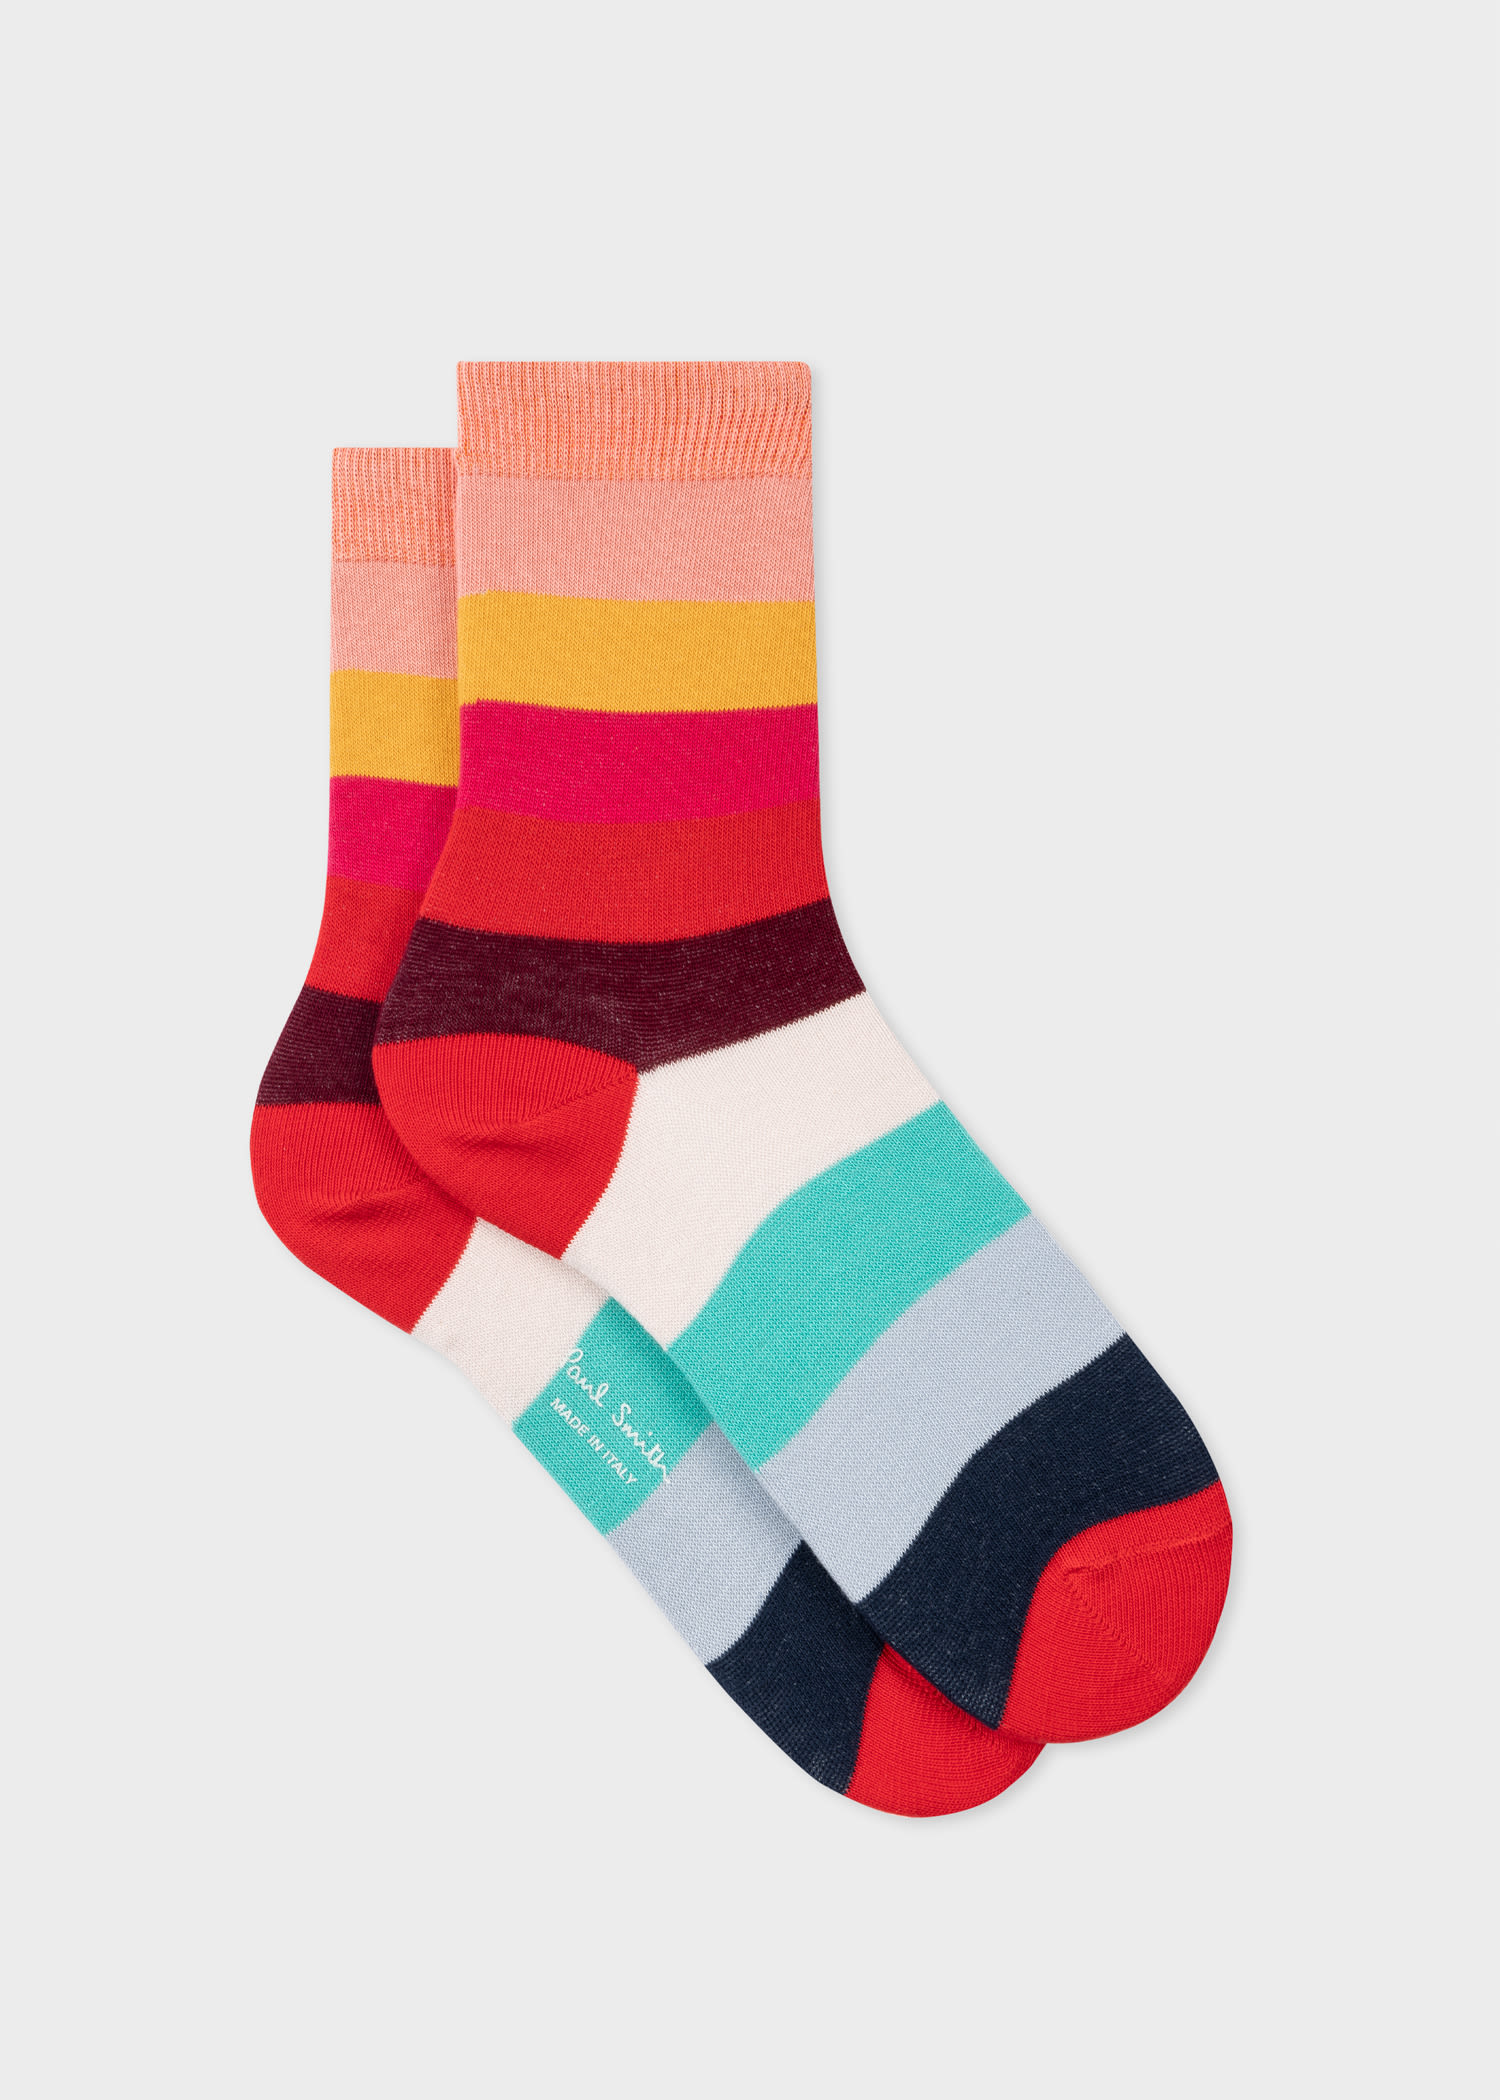 Paul Smith Women's 'swirl' Stripe Socks Multicolour